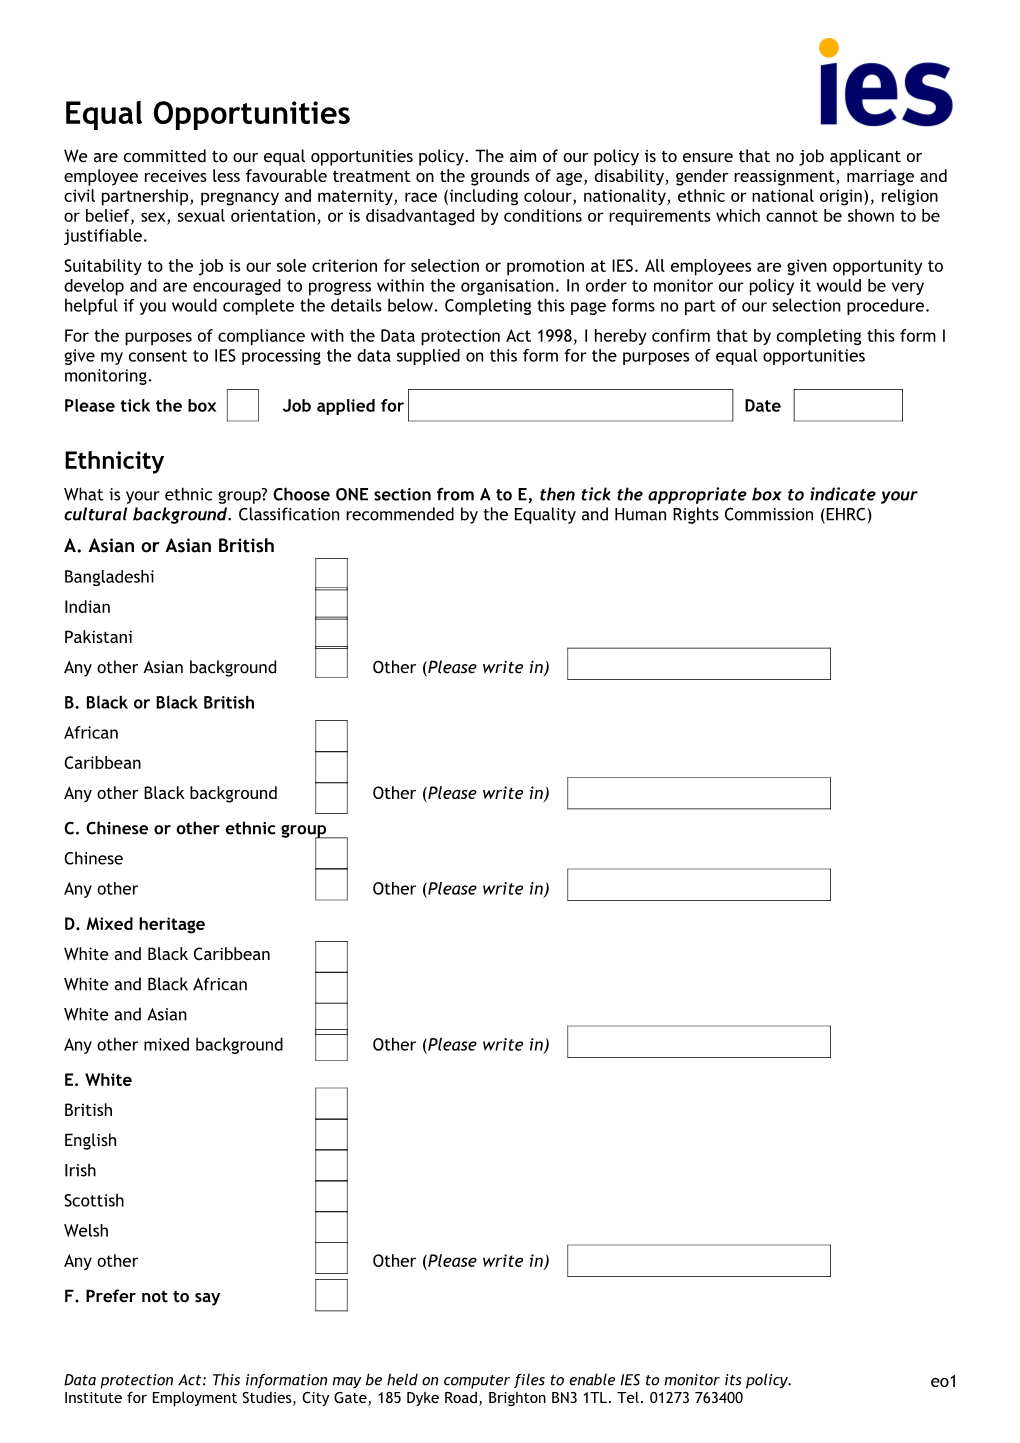 IES Job Application Form